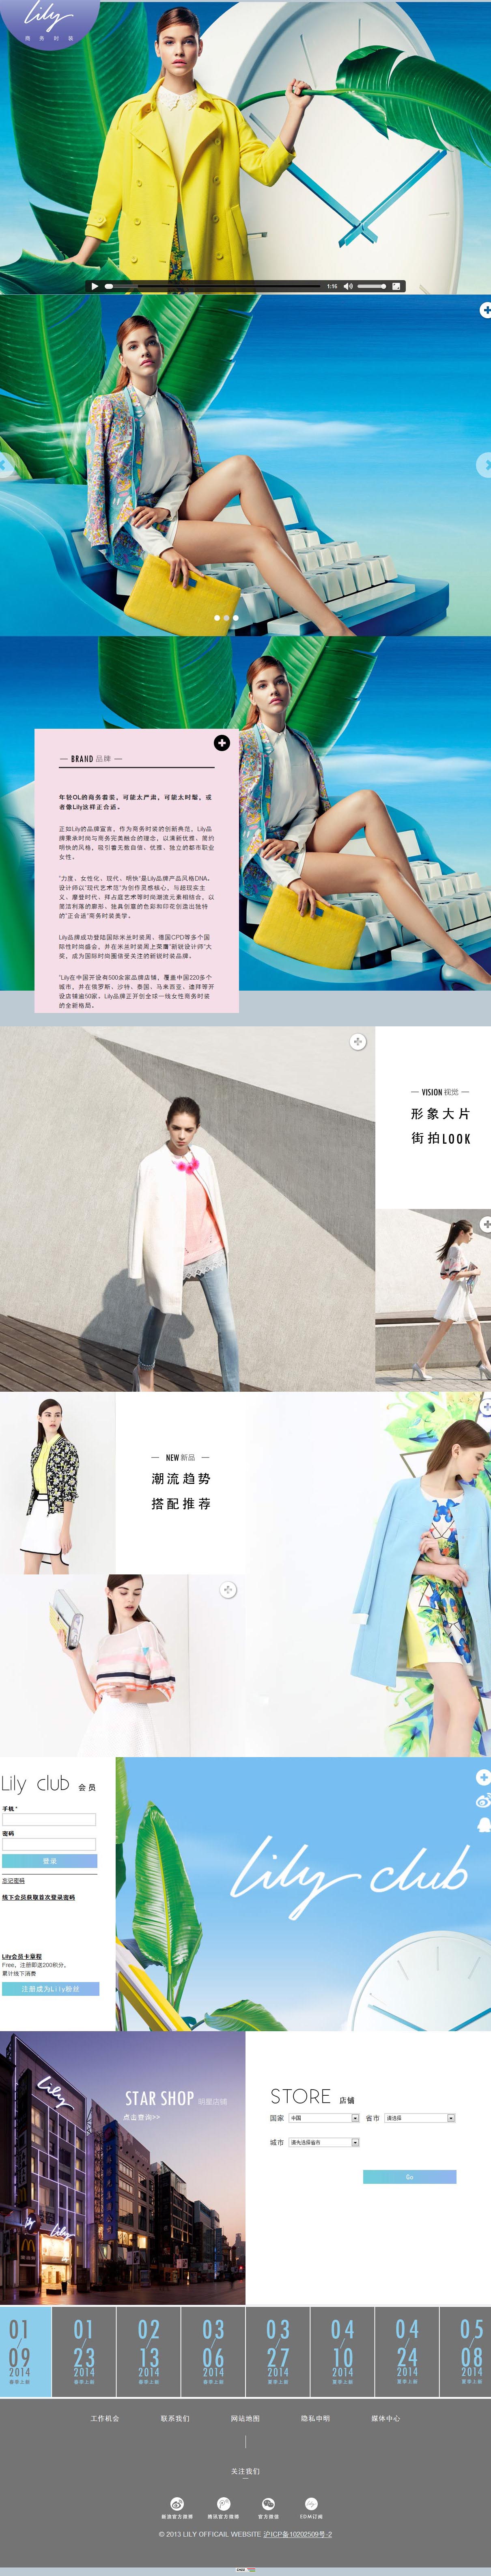 上海丝绸集团品牌发展有限公司Lily品牌网站